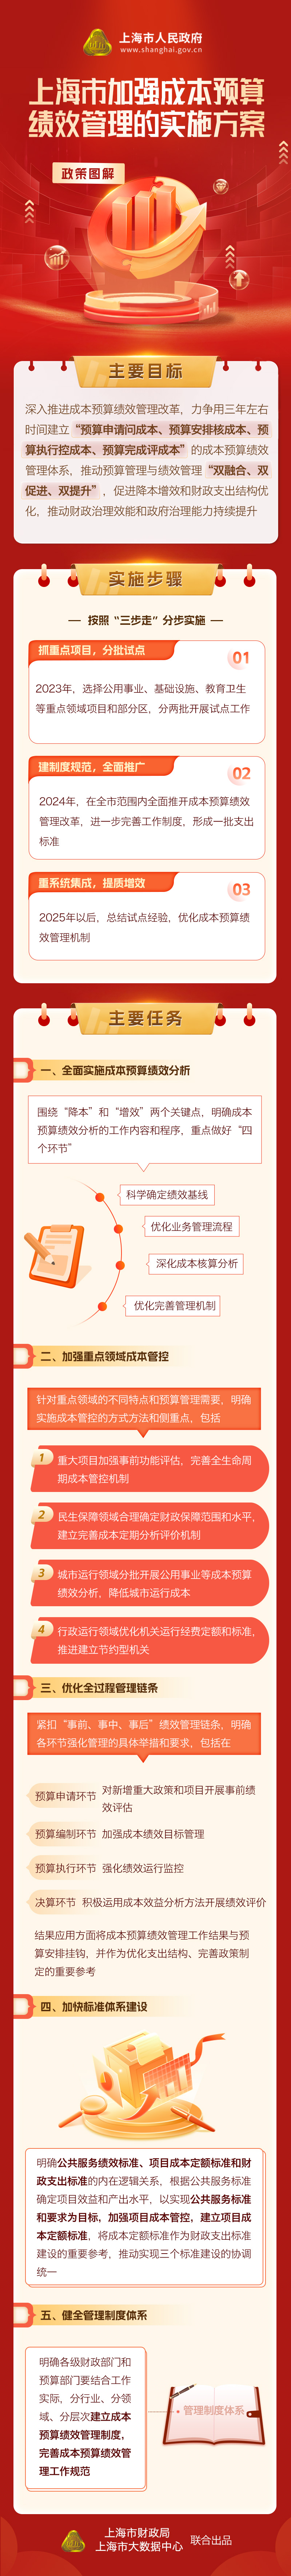 《上海市加强成本预算绩效管理的实施方案》政策图解.jpg